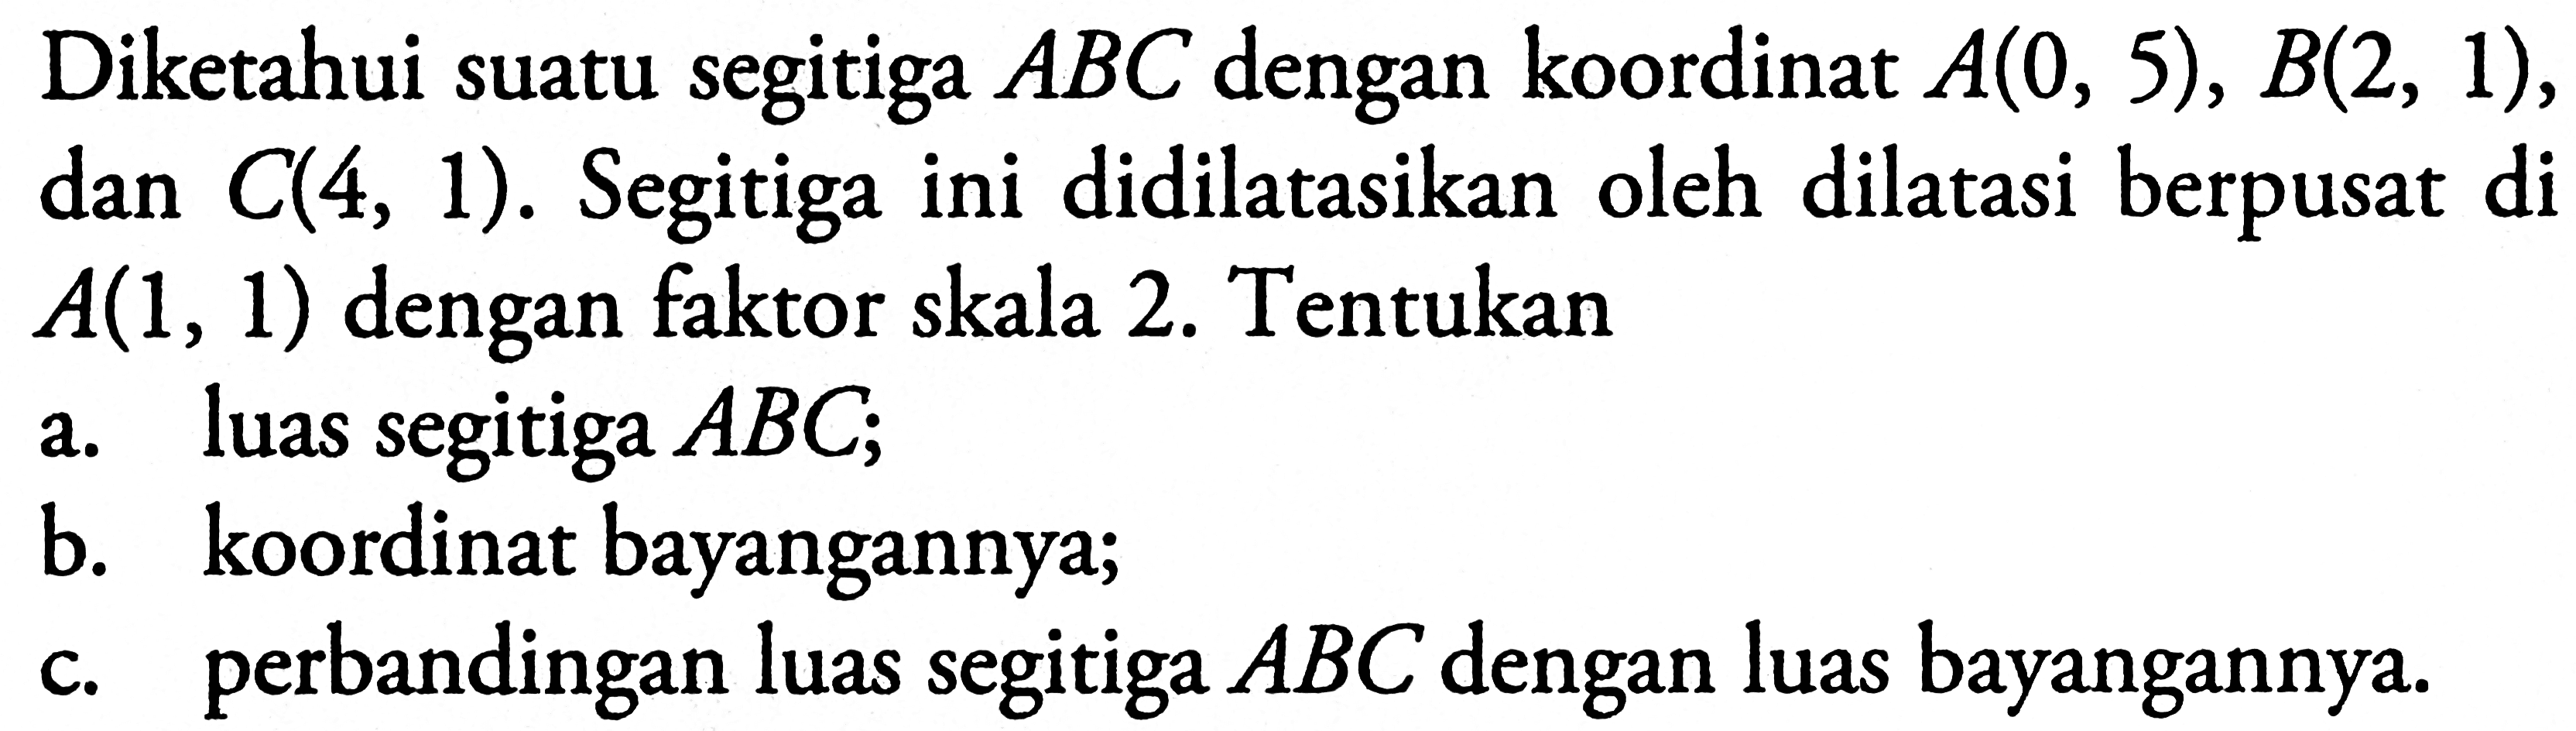 Diketahui suatu segitiga ABC dengan koordinat A(0, 5), B(2, 1), dan C(4, 1). Segitiga ini didilatasikan oleh dilatasi berpusat di A(1, 1) dengan faktor skala 2. Tentukan a. luas segitiga ABC; b. koordinat bayangannya; c. perbandingan luas segitiga ABC dengan luas bayangannya.